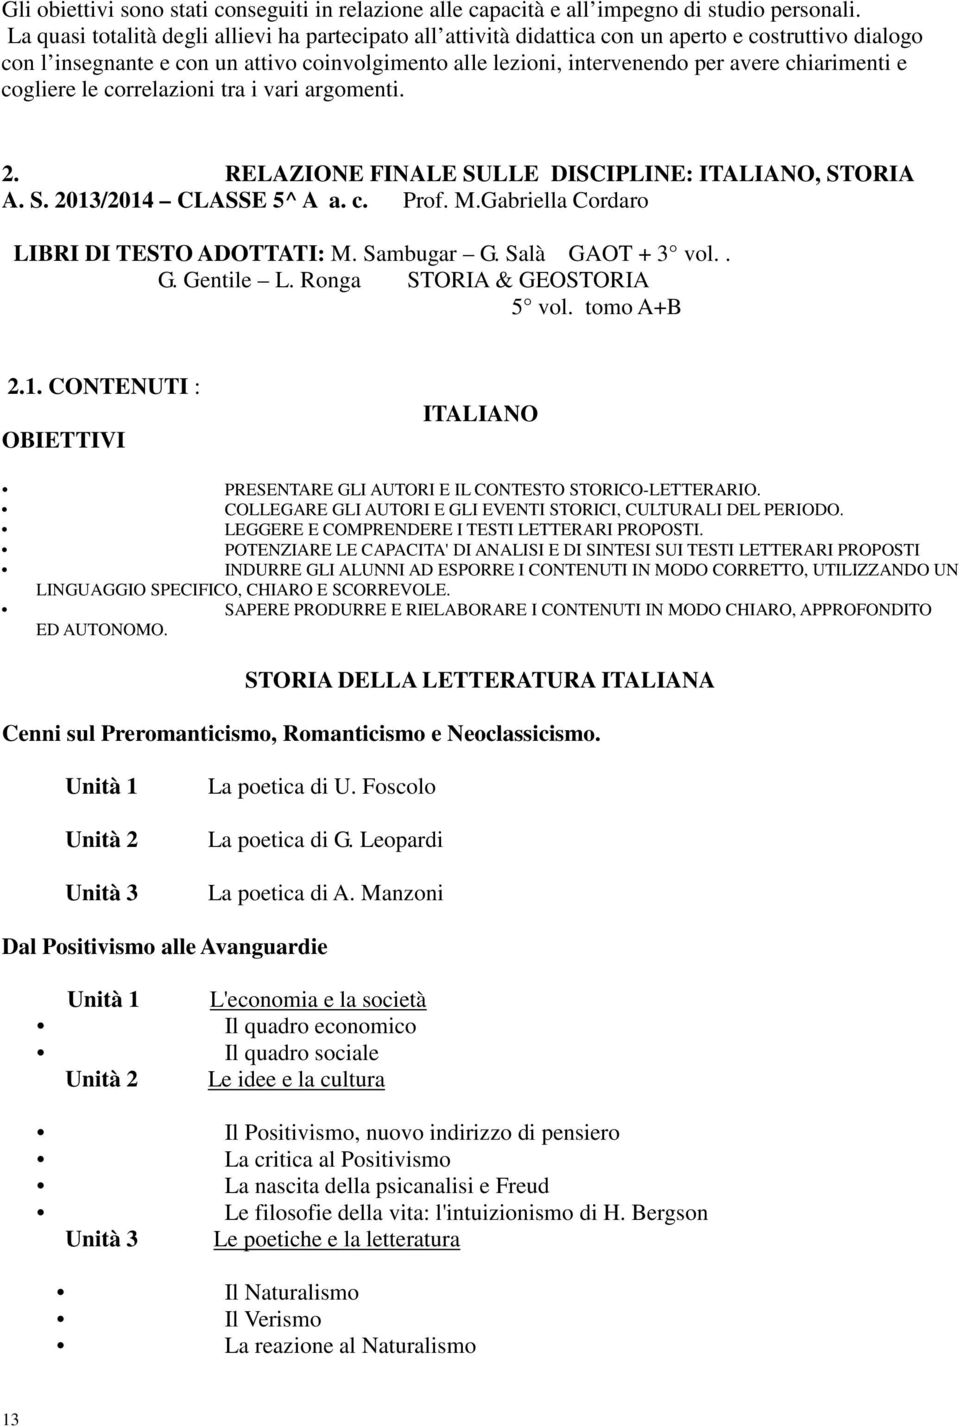 chiarimenti e cogliere le correlazioni tra i vari argomenti. 2. RELAZIONE FINALE SULLE DISCIPLINE: ITALIANO, STORIA A. S. 2013/2014 CLASSE 5^ A a. c. Prof. M.